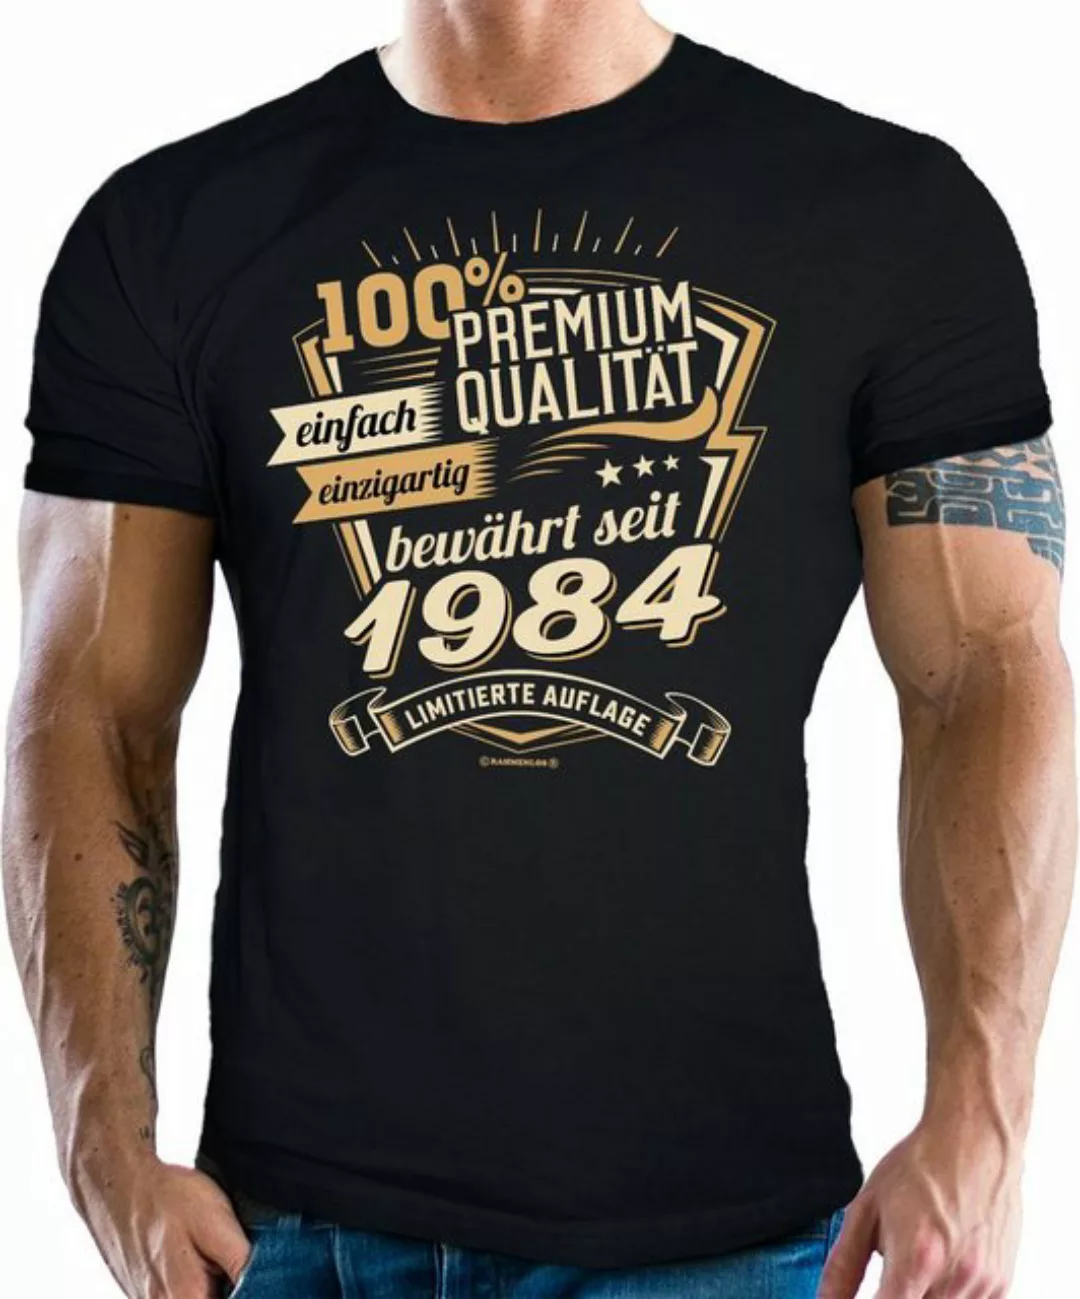 RAHMENLOS® T-Shirt als Geschenk zum 40. Geburtstag - Premium bewährt seit 1 günstig online kaufen